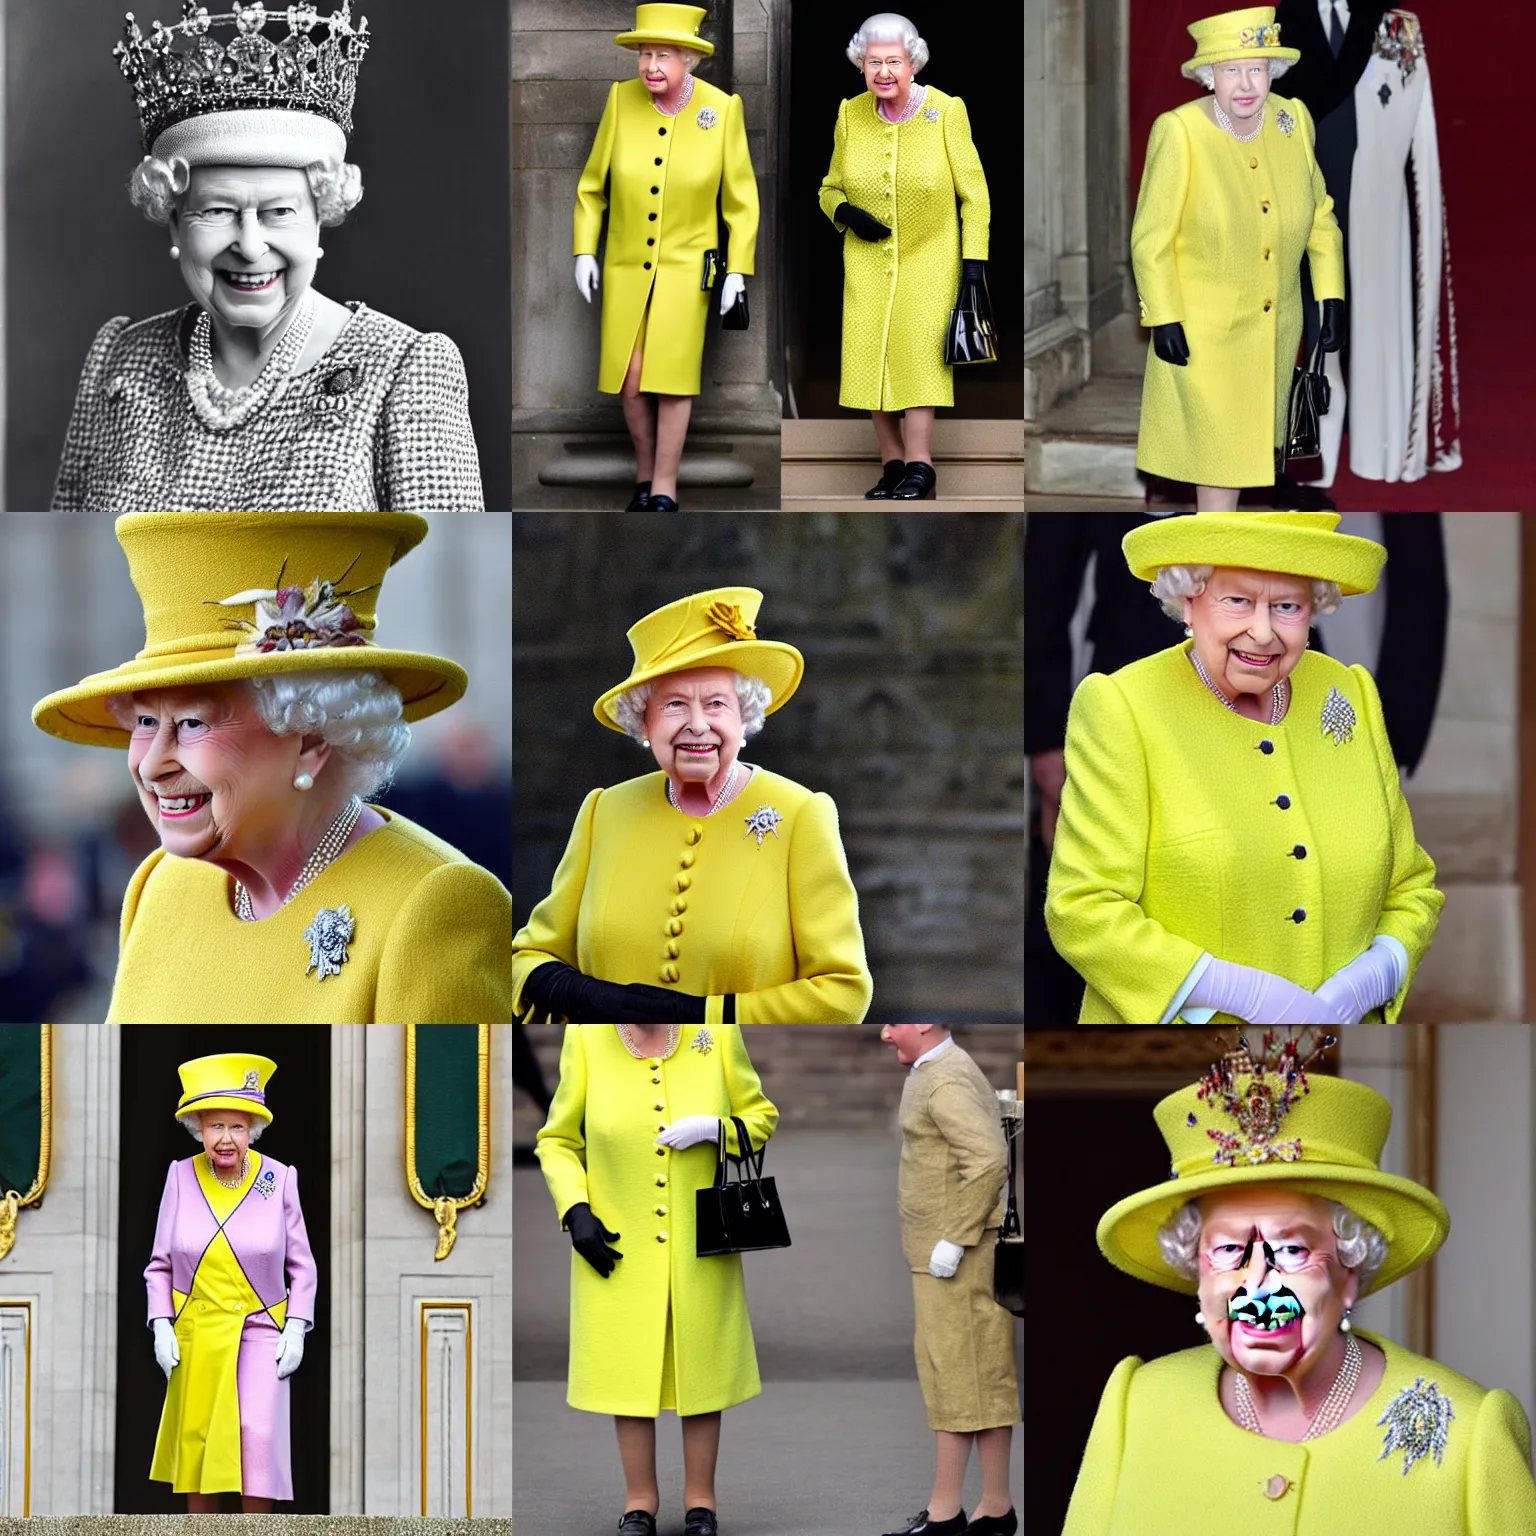 Prompt: queen elizabeth wearing banana suit